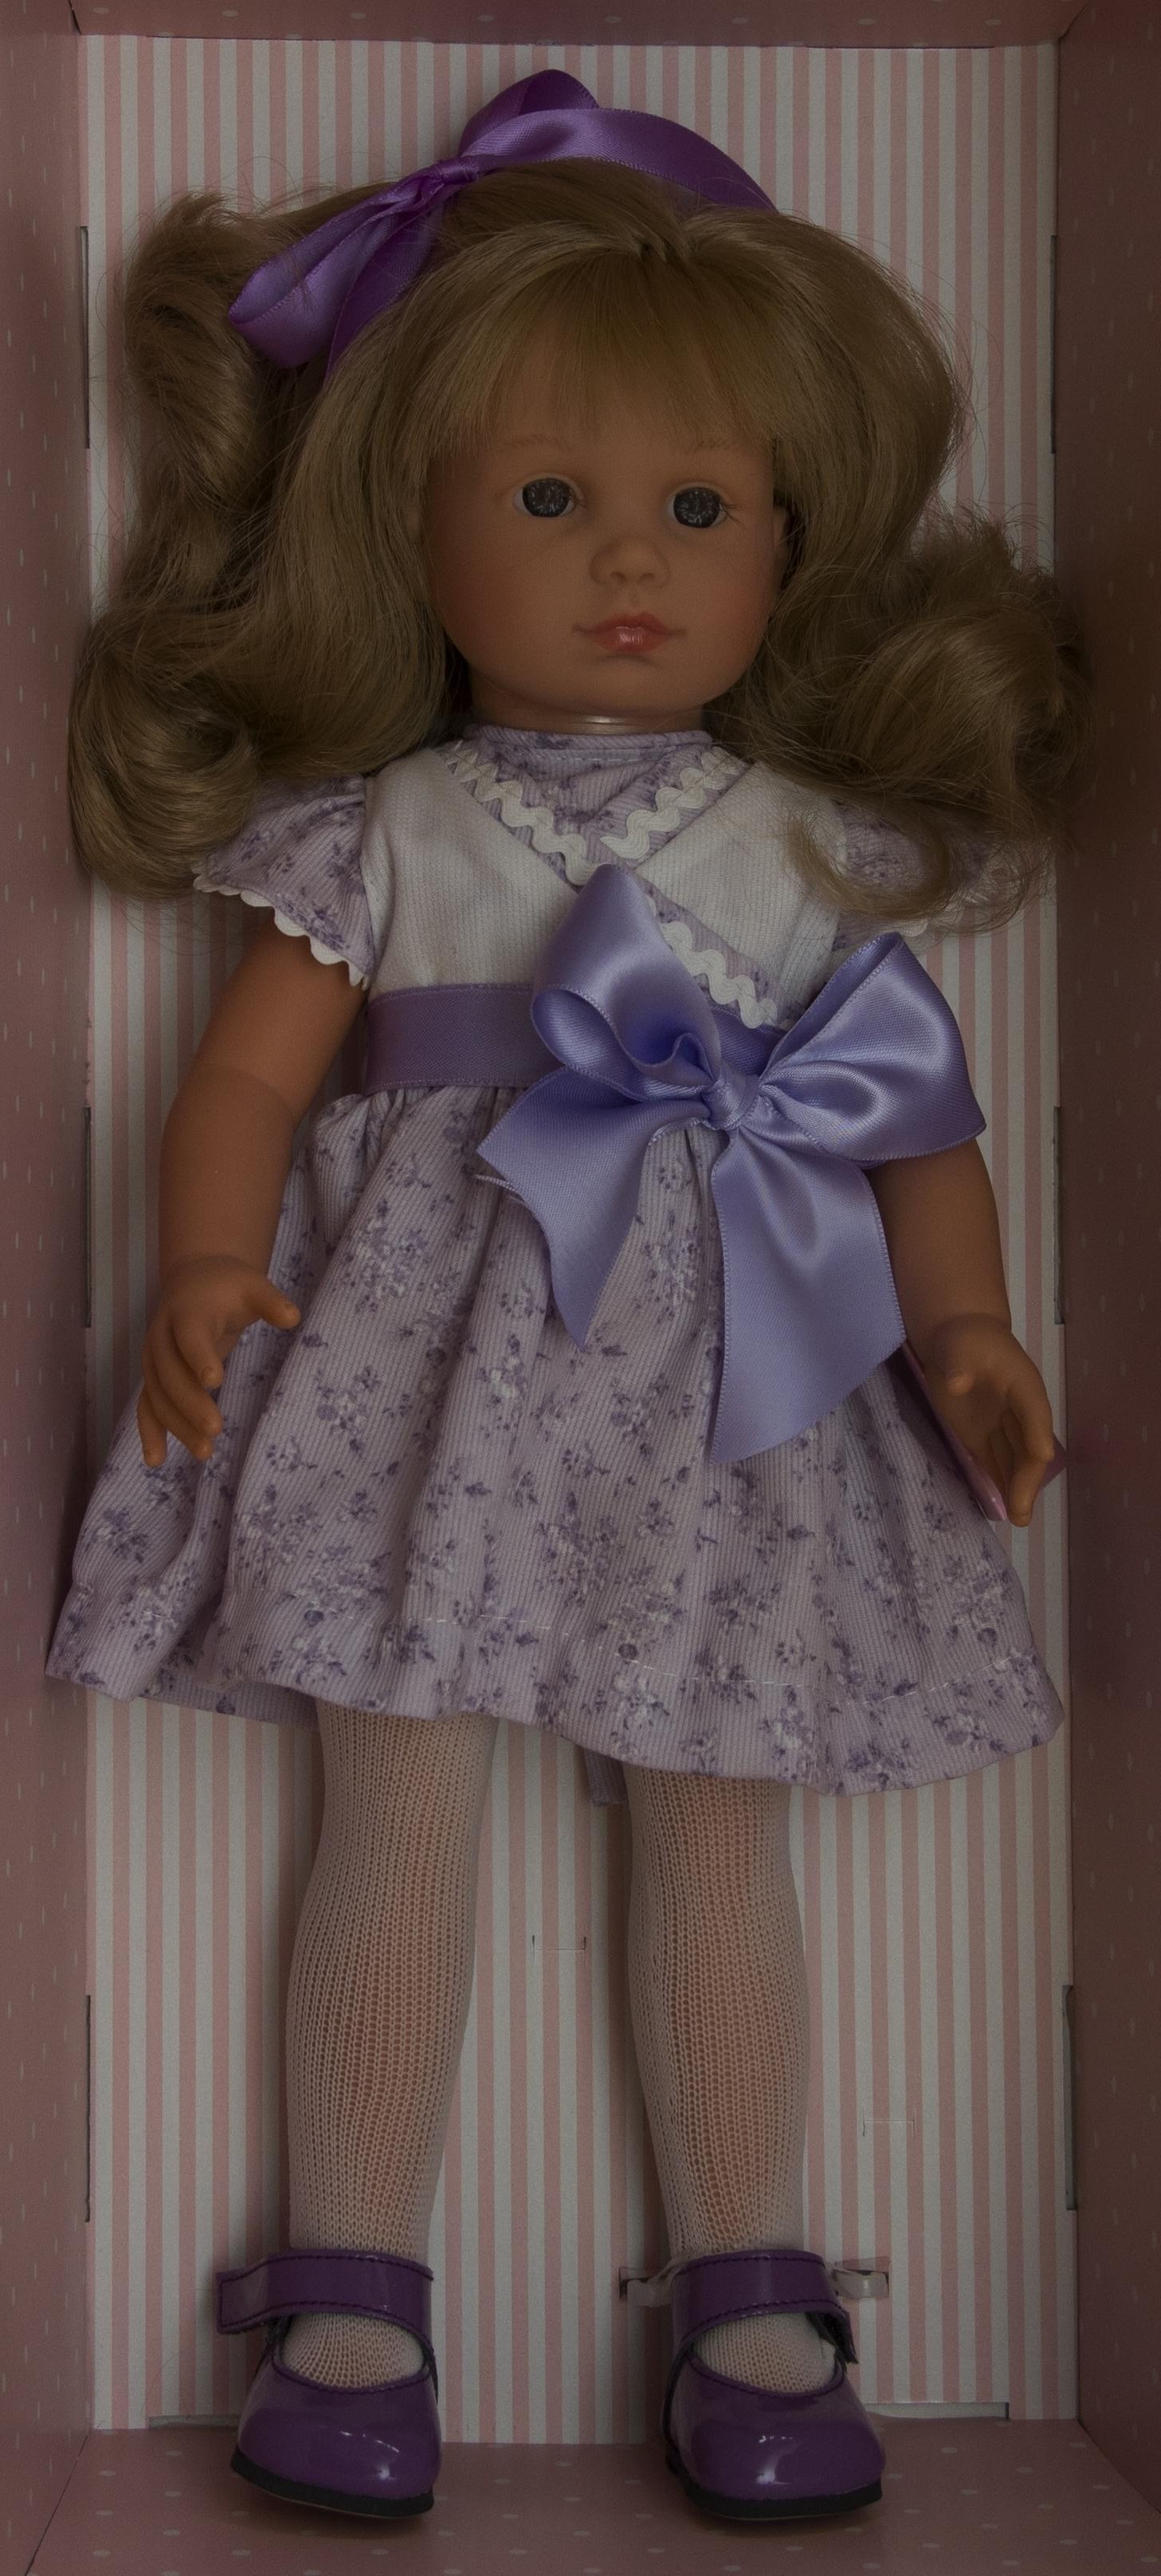 Realistická panenka NELLY - šaty s fialovou mašlí- od firmy ASIVIL ze Španělska